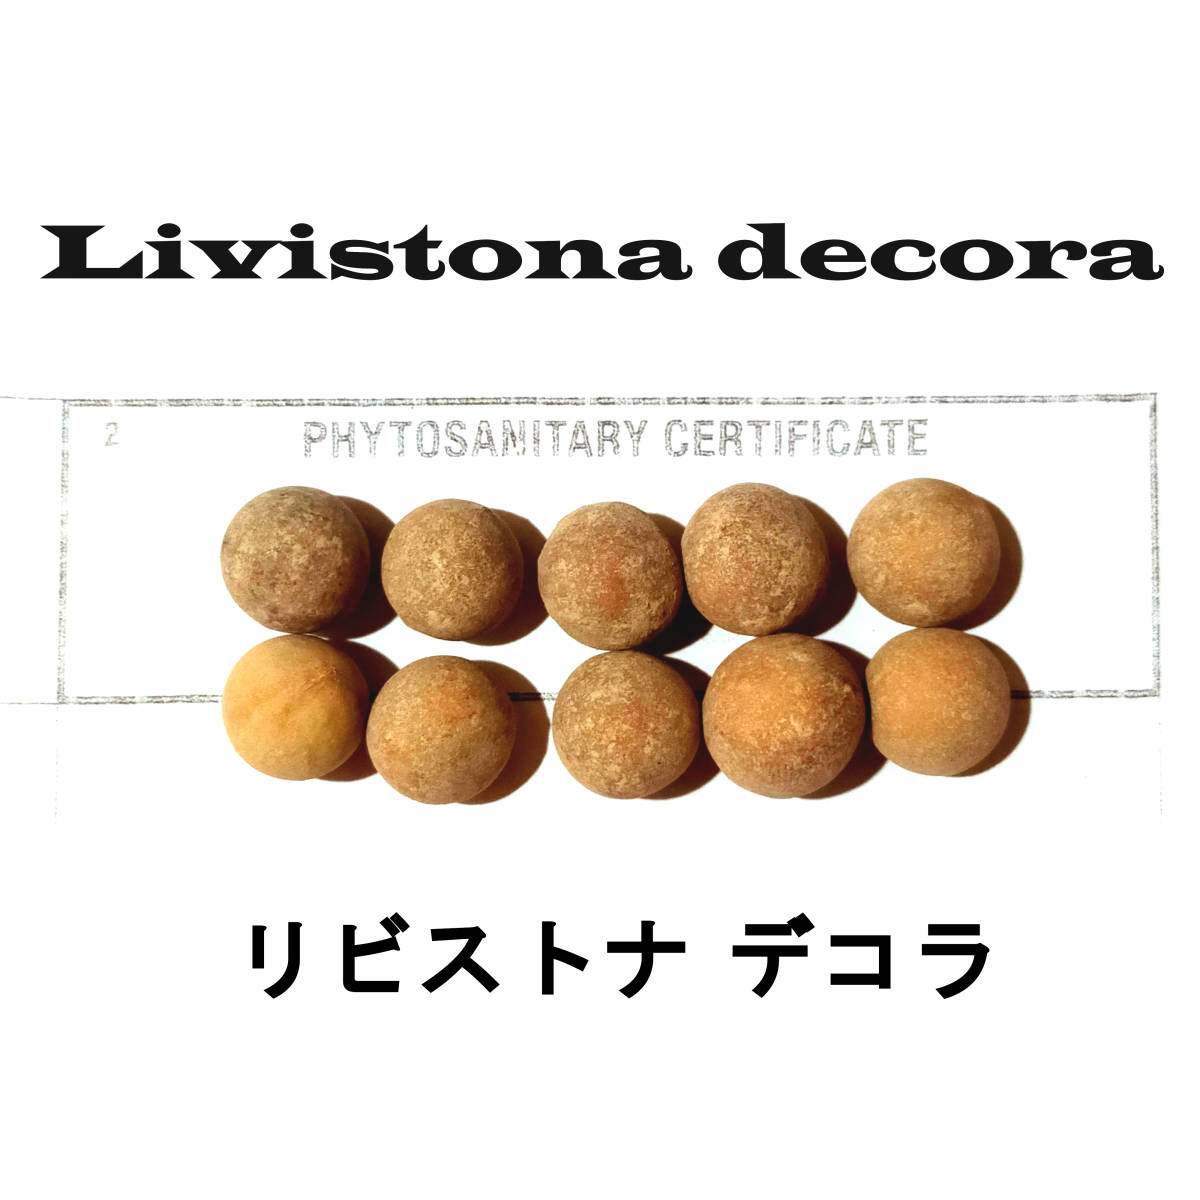 9月入荷 5粒+ リビストナ デコラ 種子 種 Livistona decora リビストナ ヤシ ビロウ_画像1